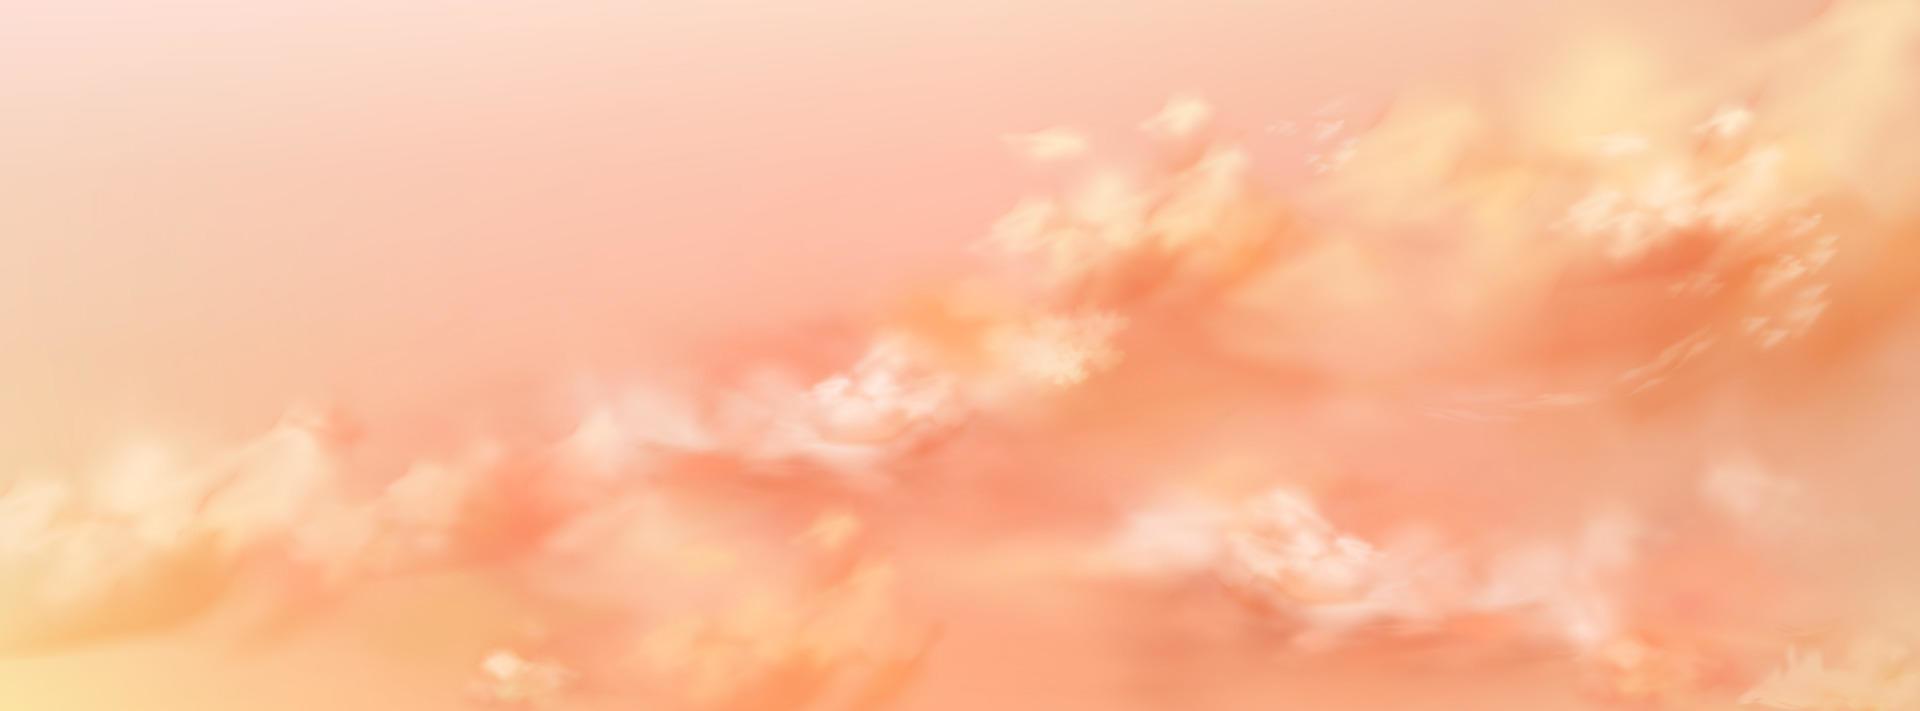 fantastisch perzik lucht met zacht roze wolk structuur vector